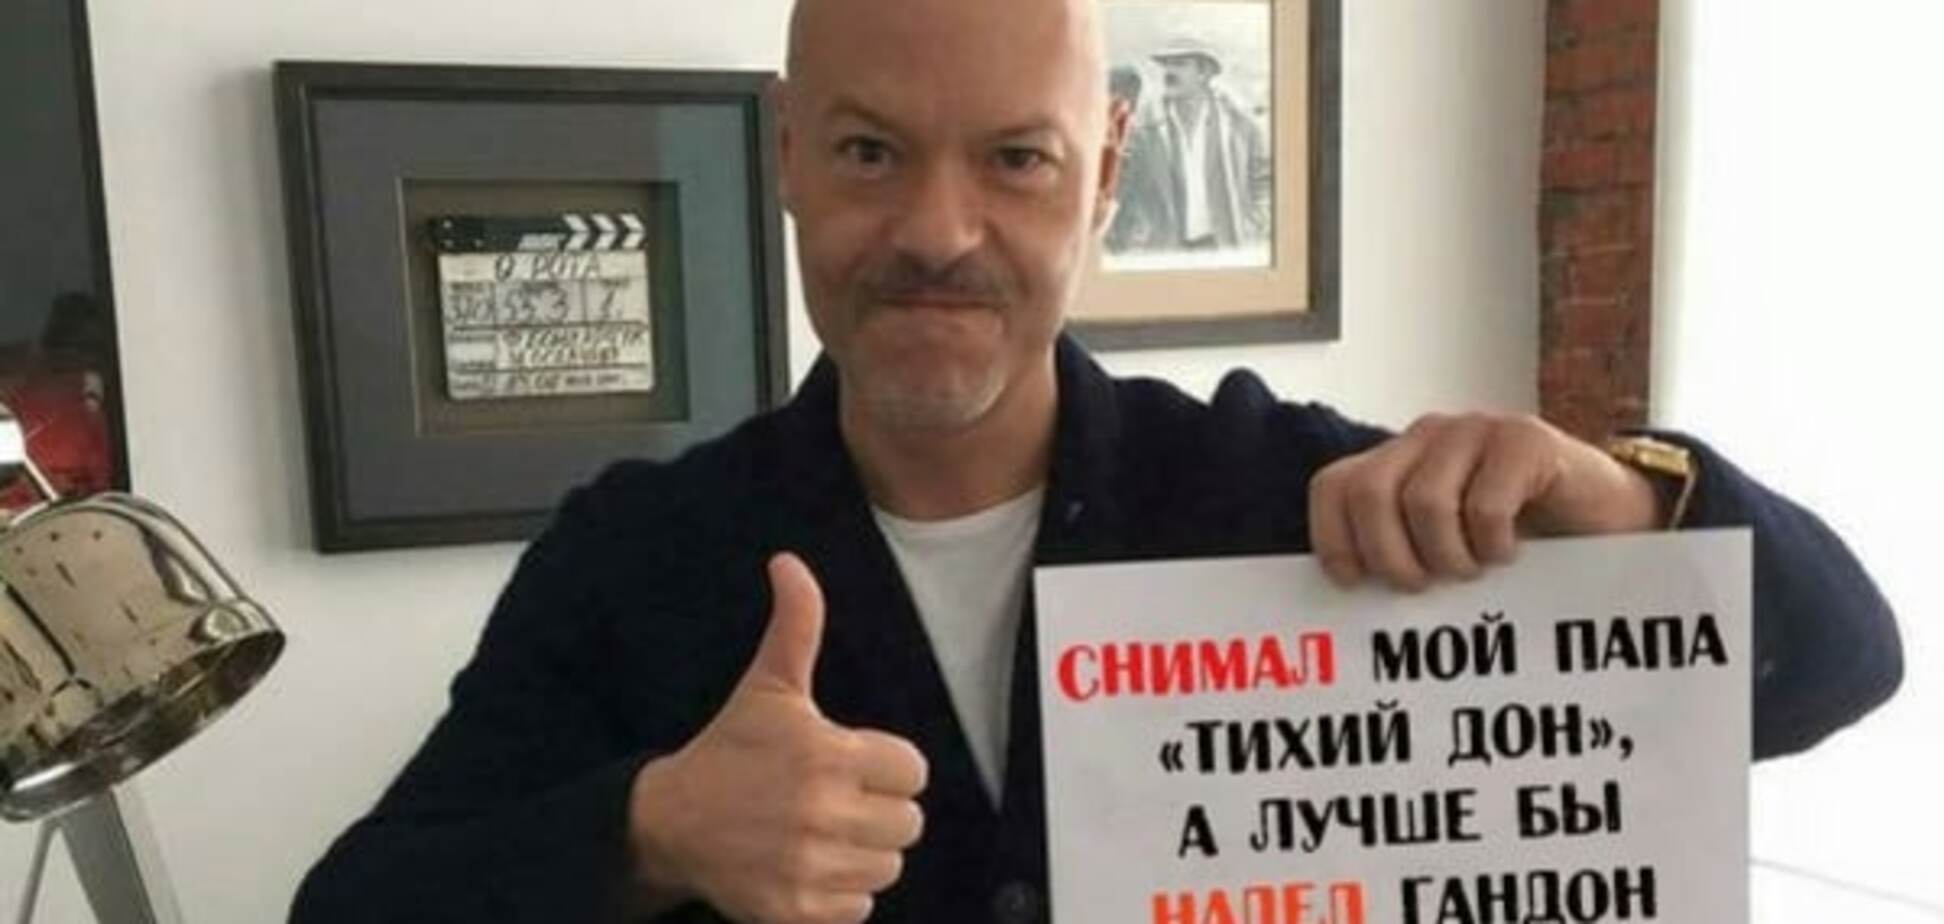 Соцсети высмеяли Бондарчука и Баскова за поддержку Кадырова